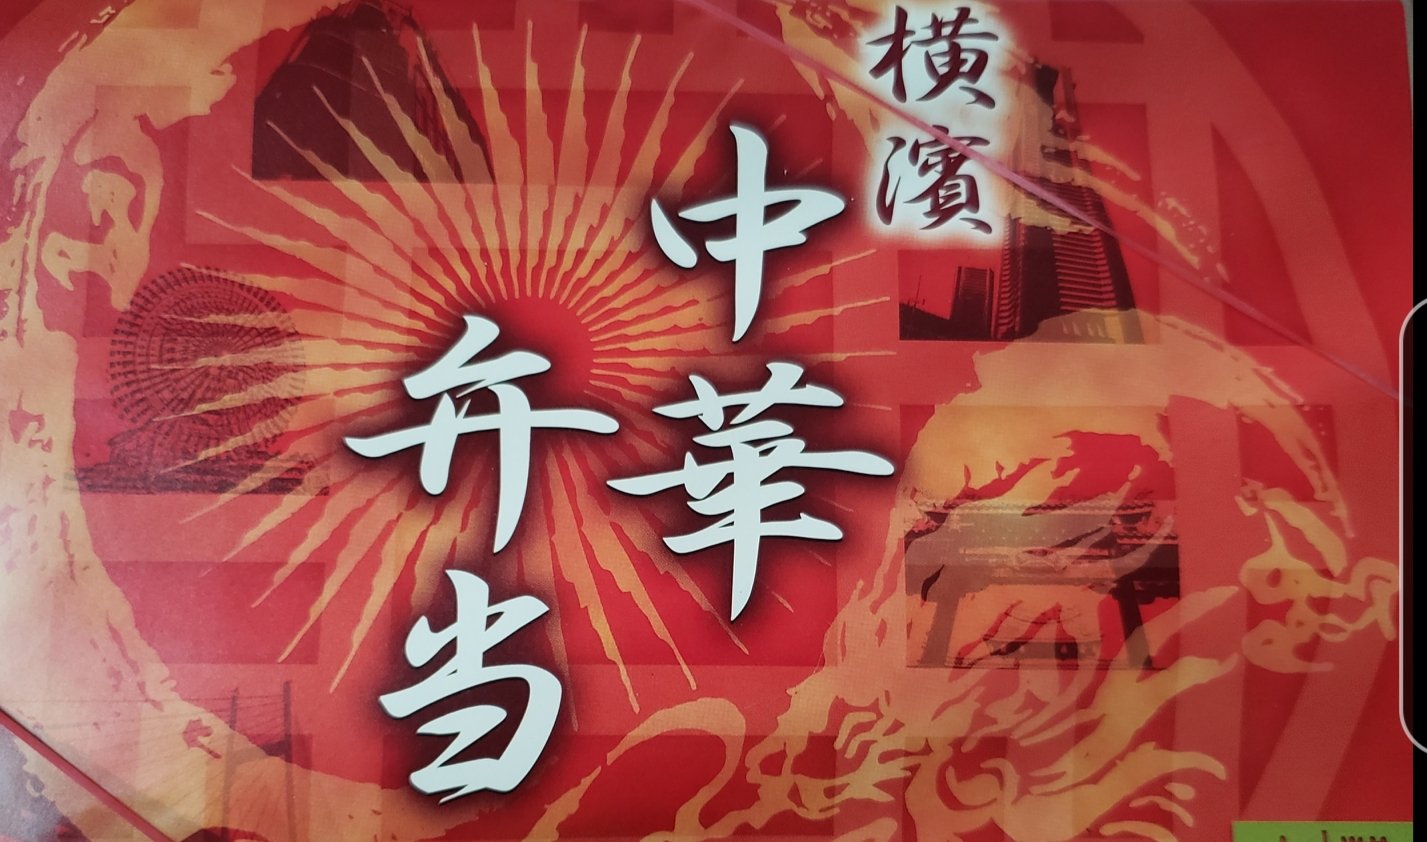 8月株主優待 崎陽軒のシュウマイ中華弁当を買いました かすみちゃんの株主優待日記 優待ブログ